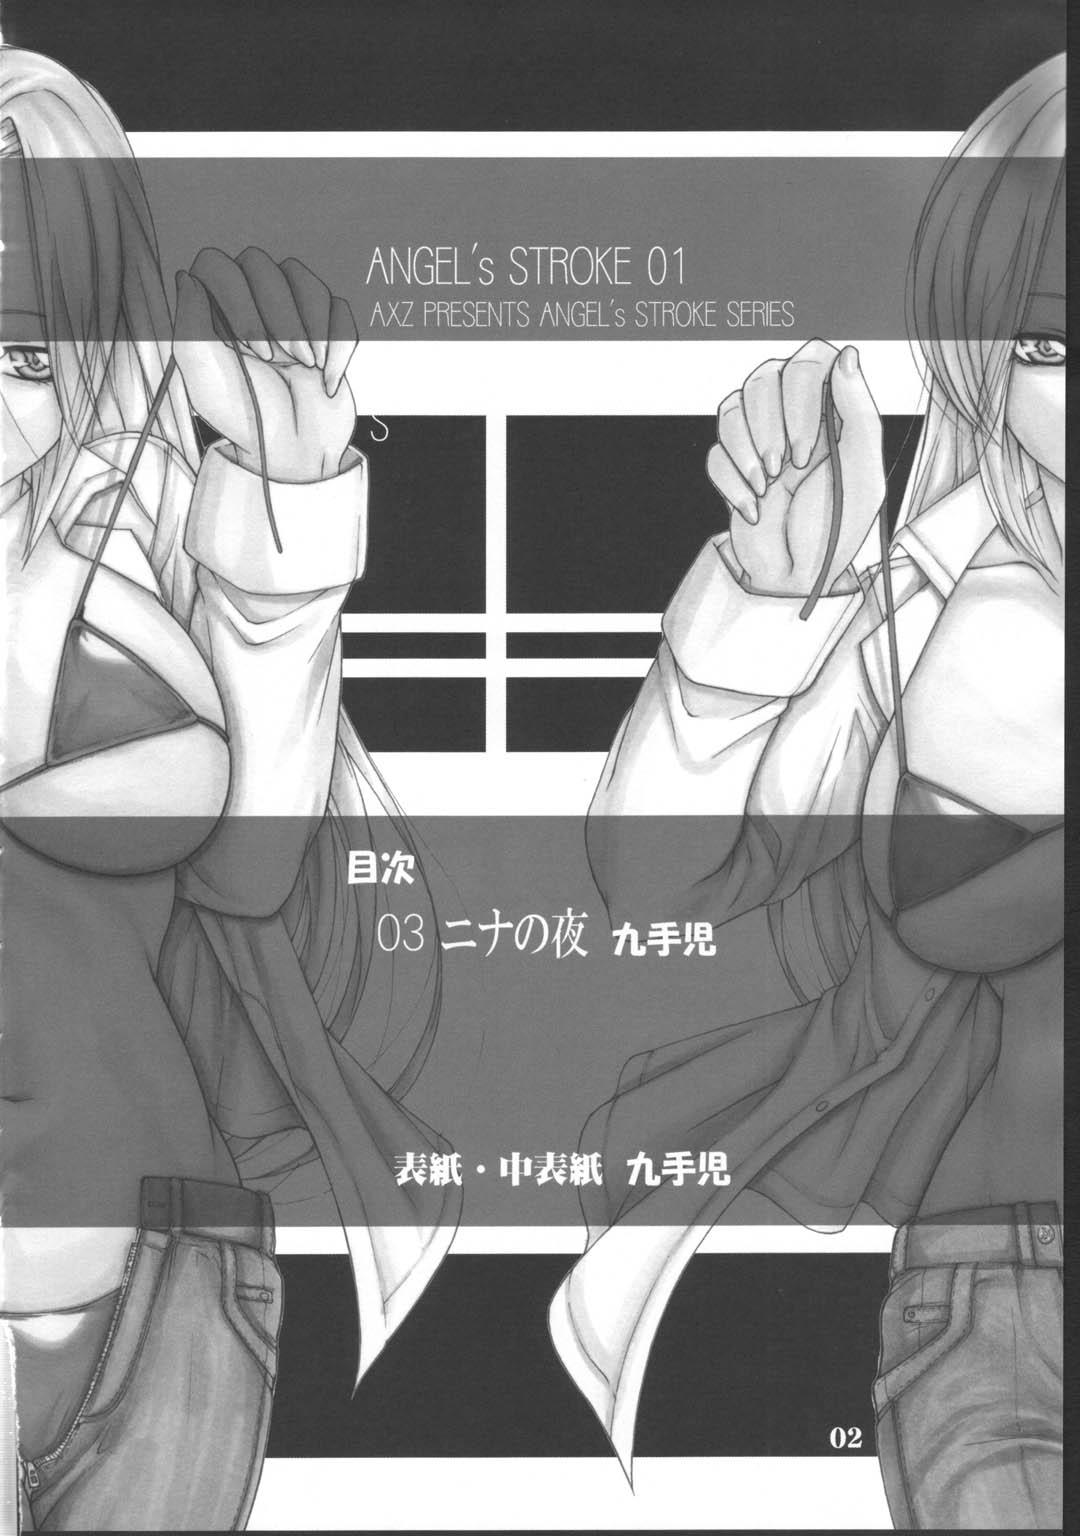 Angel's stroke 01 2